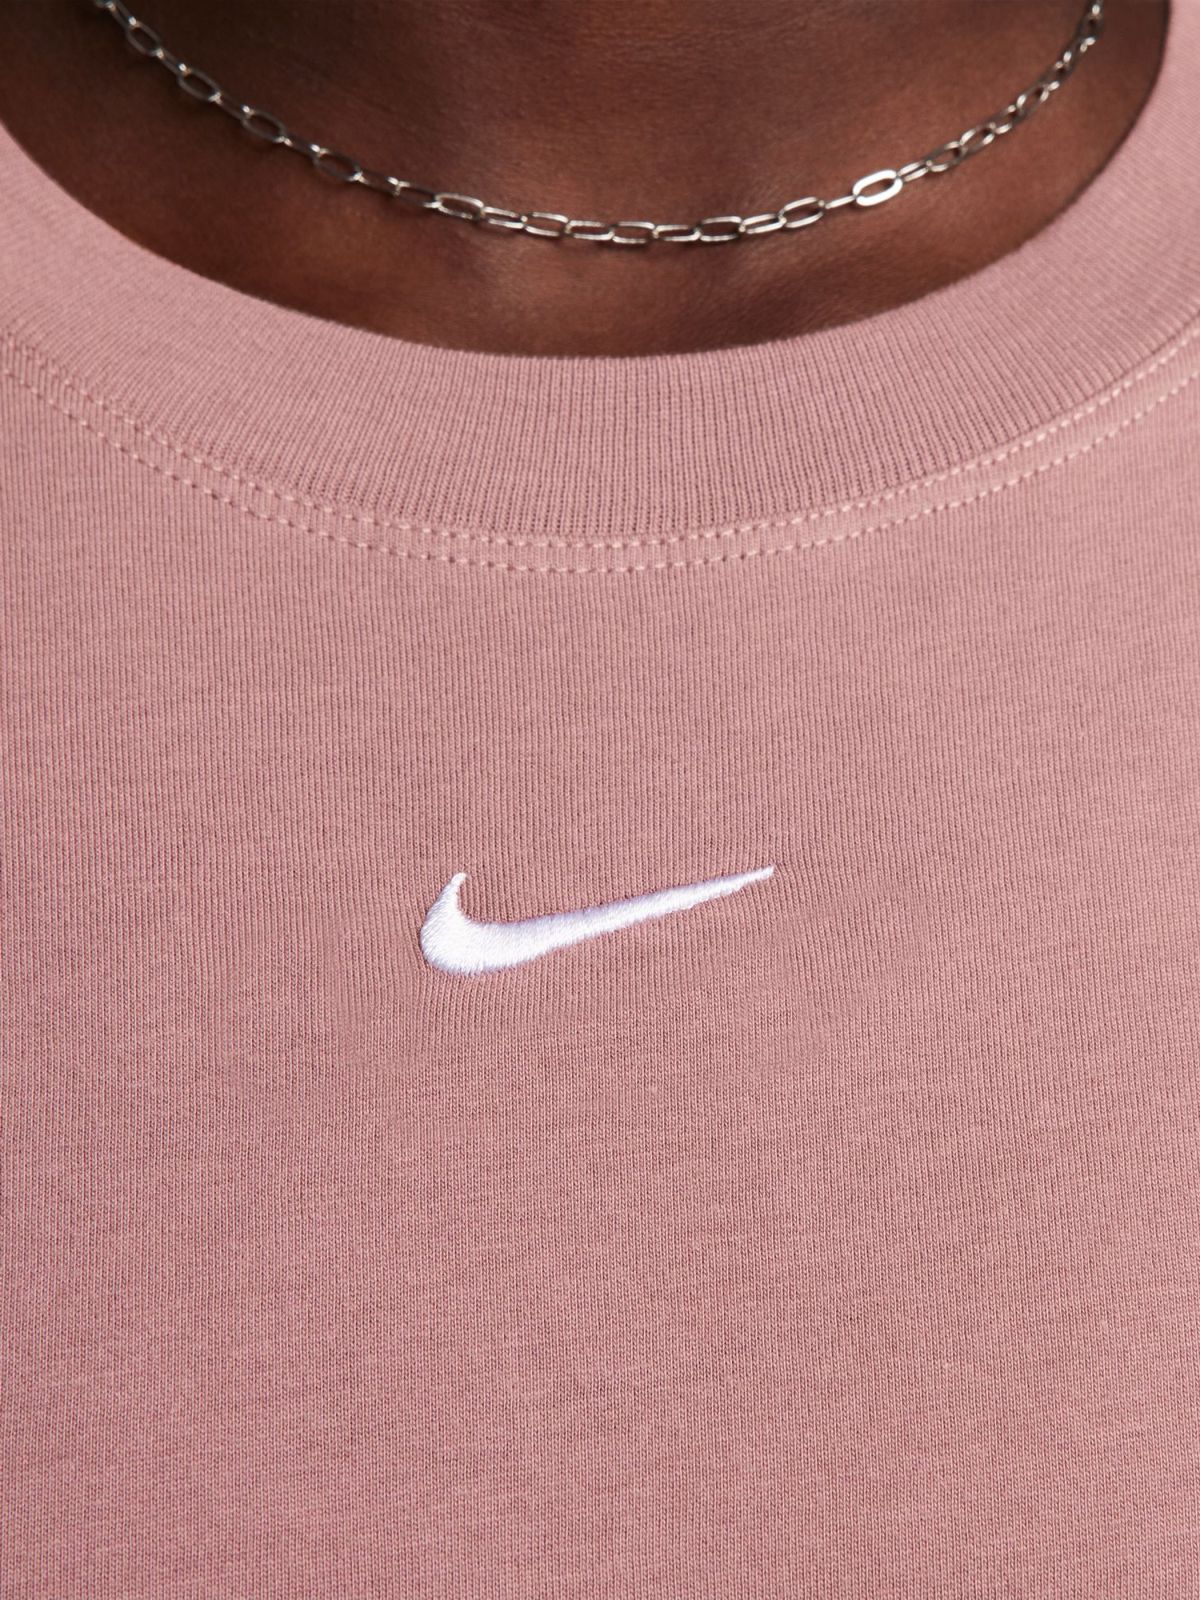  טי שירט עם רקמת לוגו Nike Sportswear של NIKE